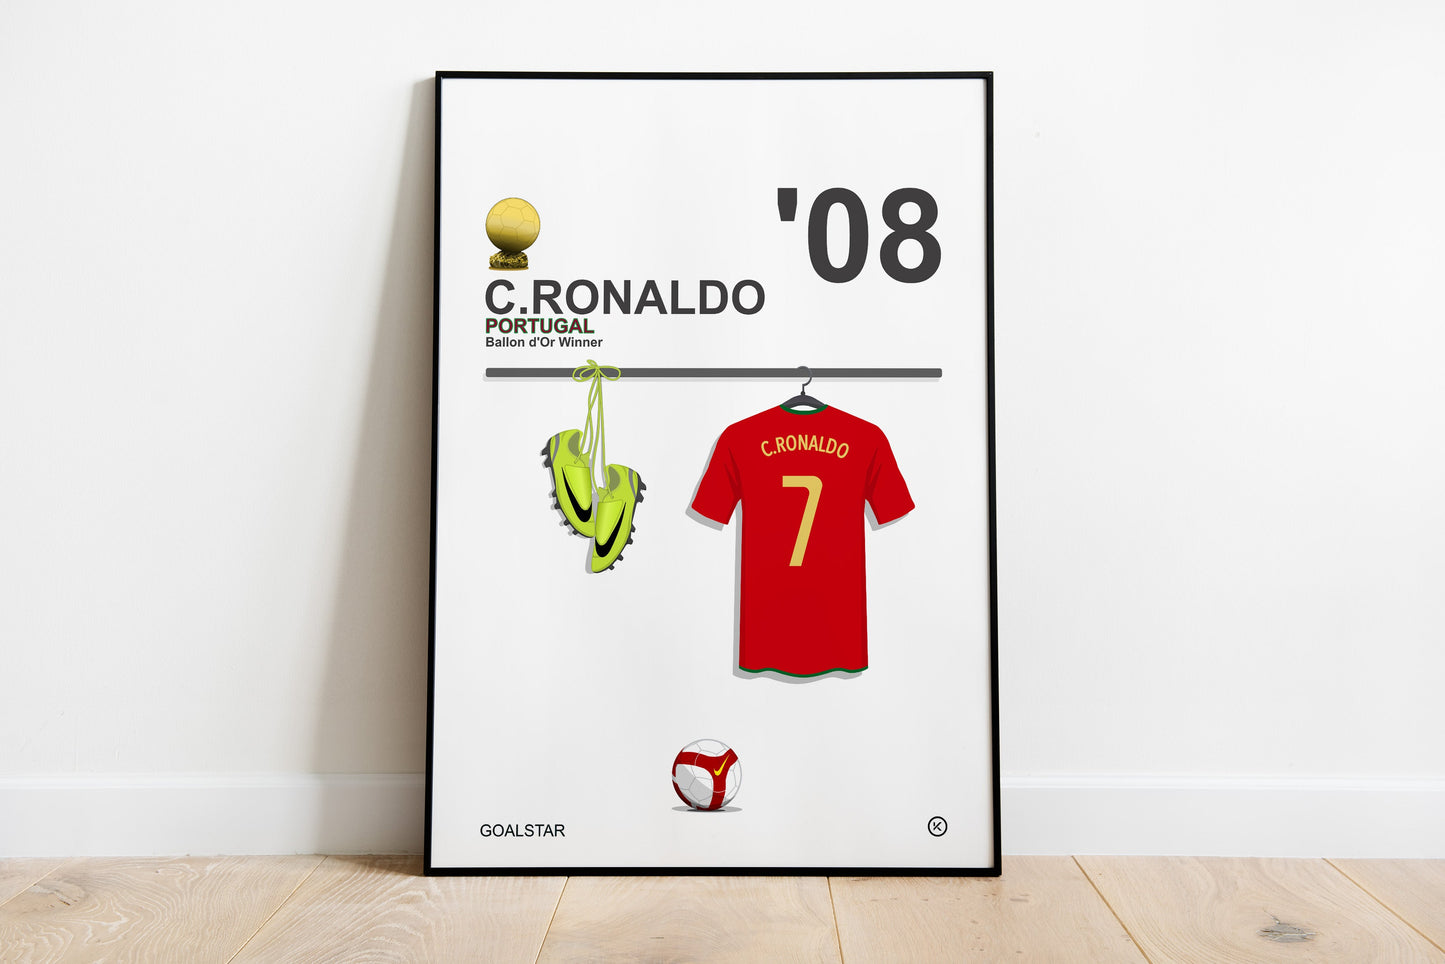 Cristiano Ronaldo - Ballon d'Or Winner 2008